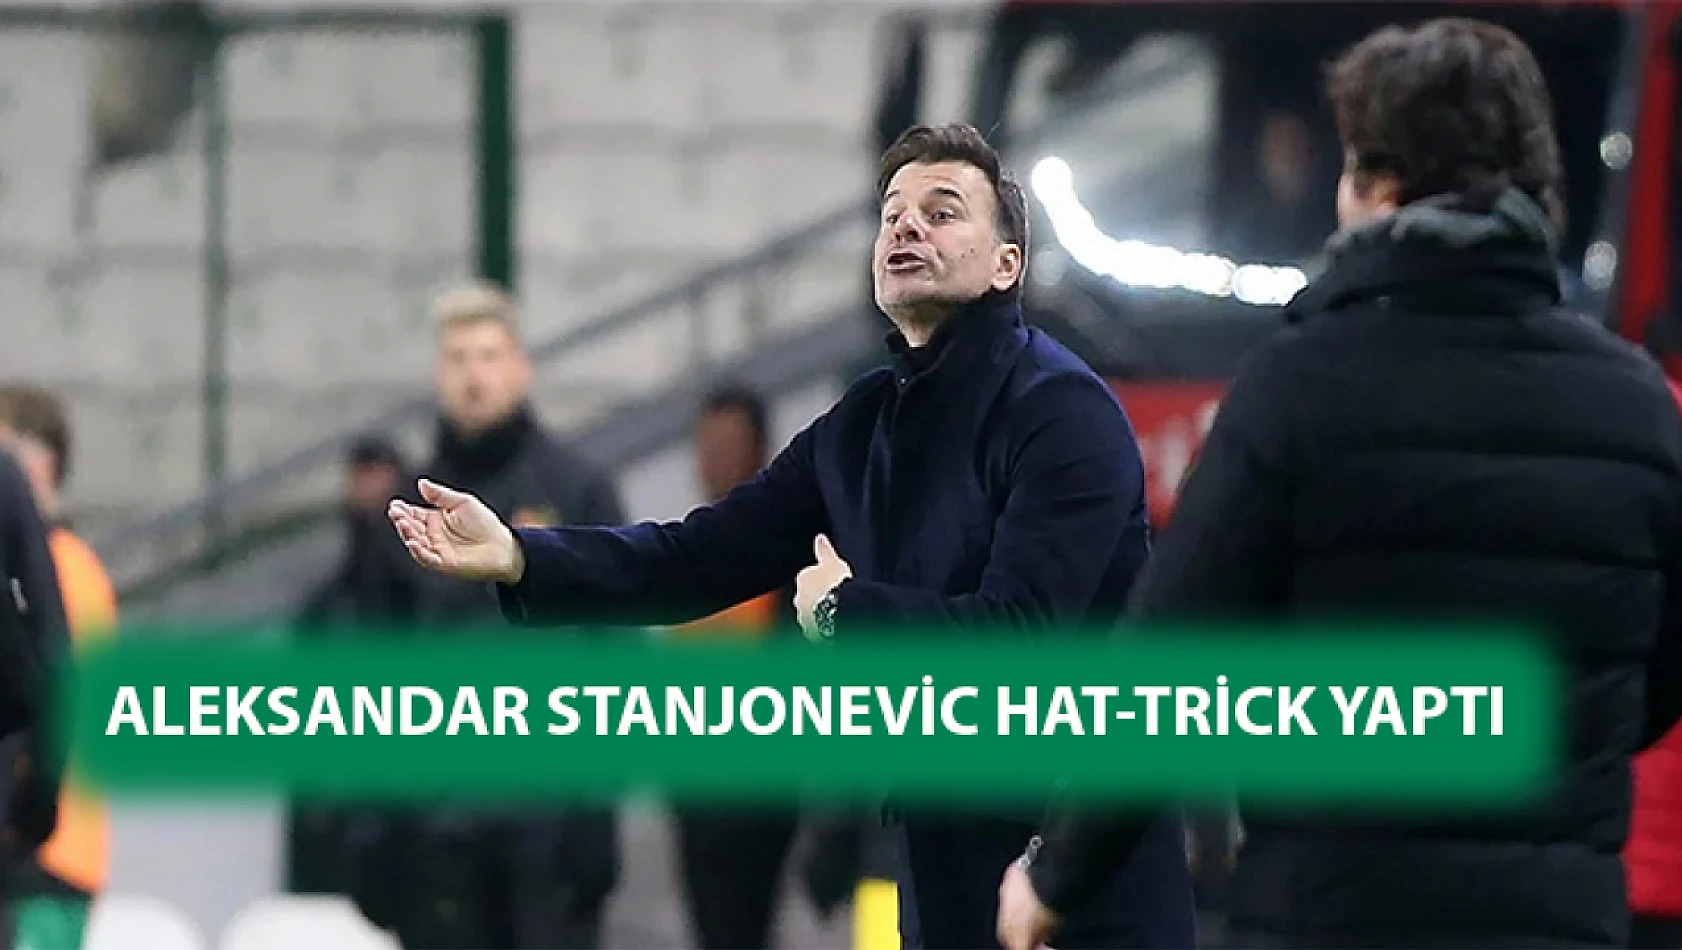 Aleksandar Stanjonevic Hat-trick yaptı